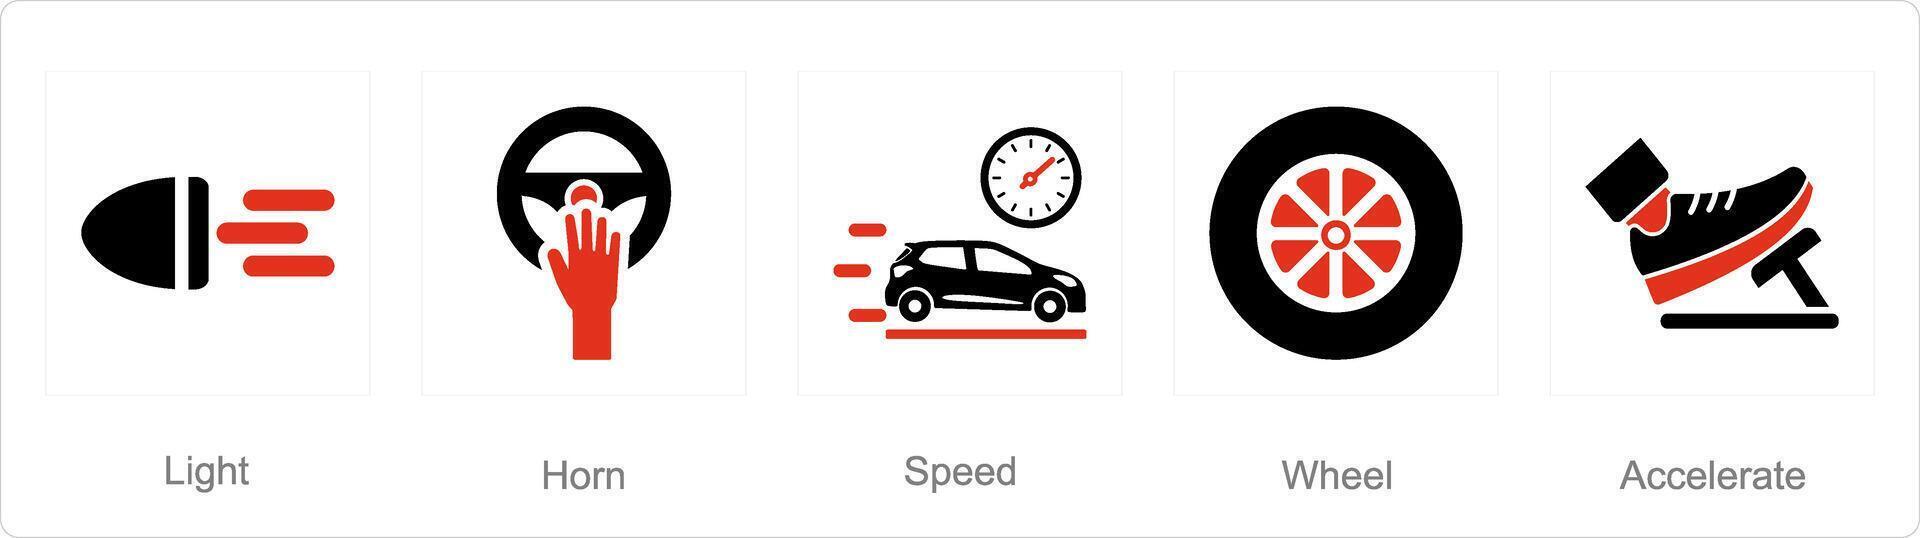 en uppsättning av 5 bil ikoner som ljus, horn, hastighet vektor